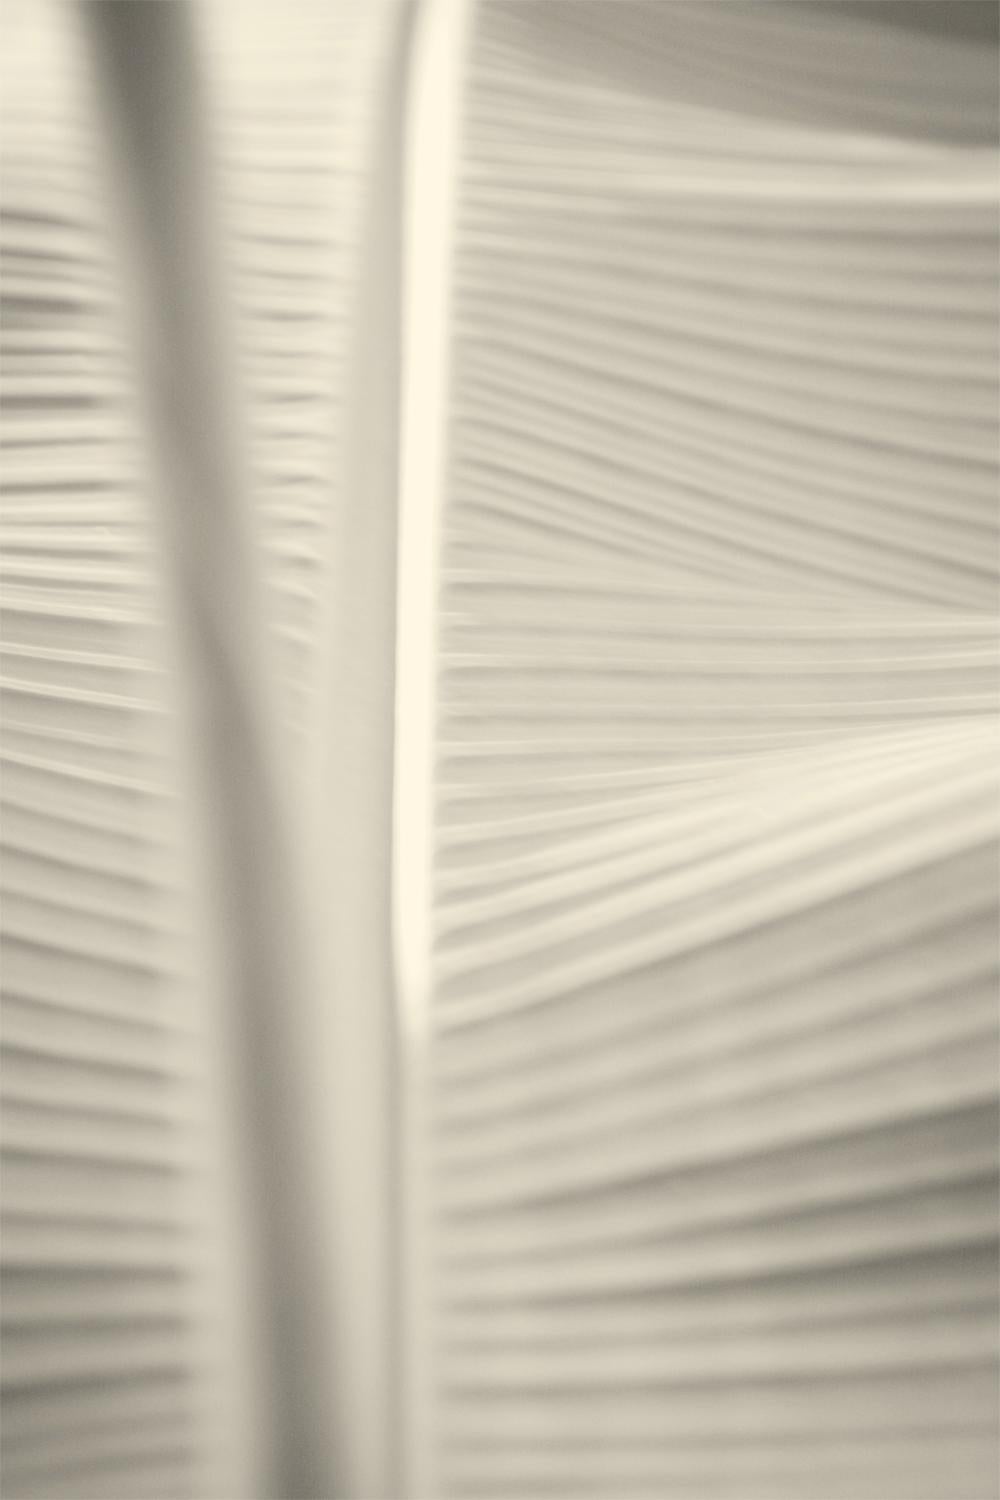 Still-Life Photograph Stuart Möller - 'White Leaf' (Feuille blanche)   Impression pigmentaire d'art surdimensionnée signée - Édition limitée